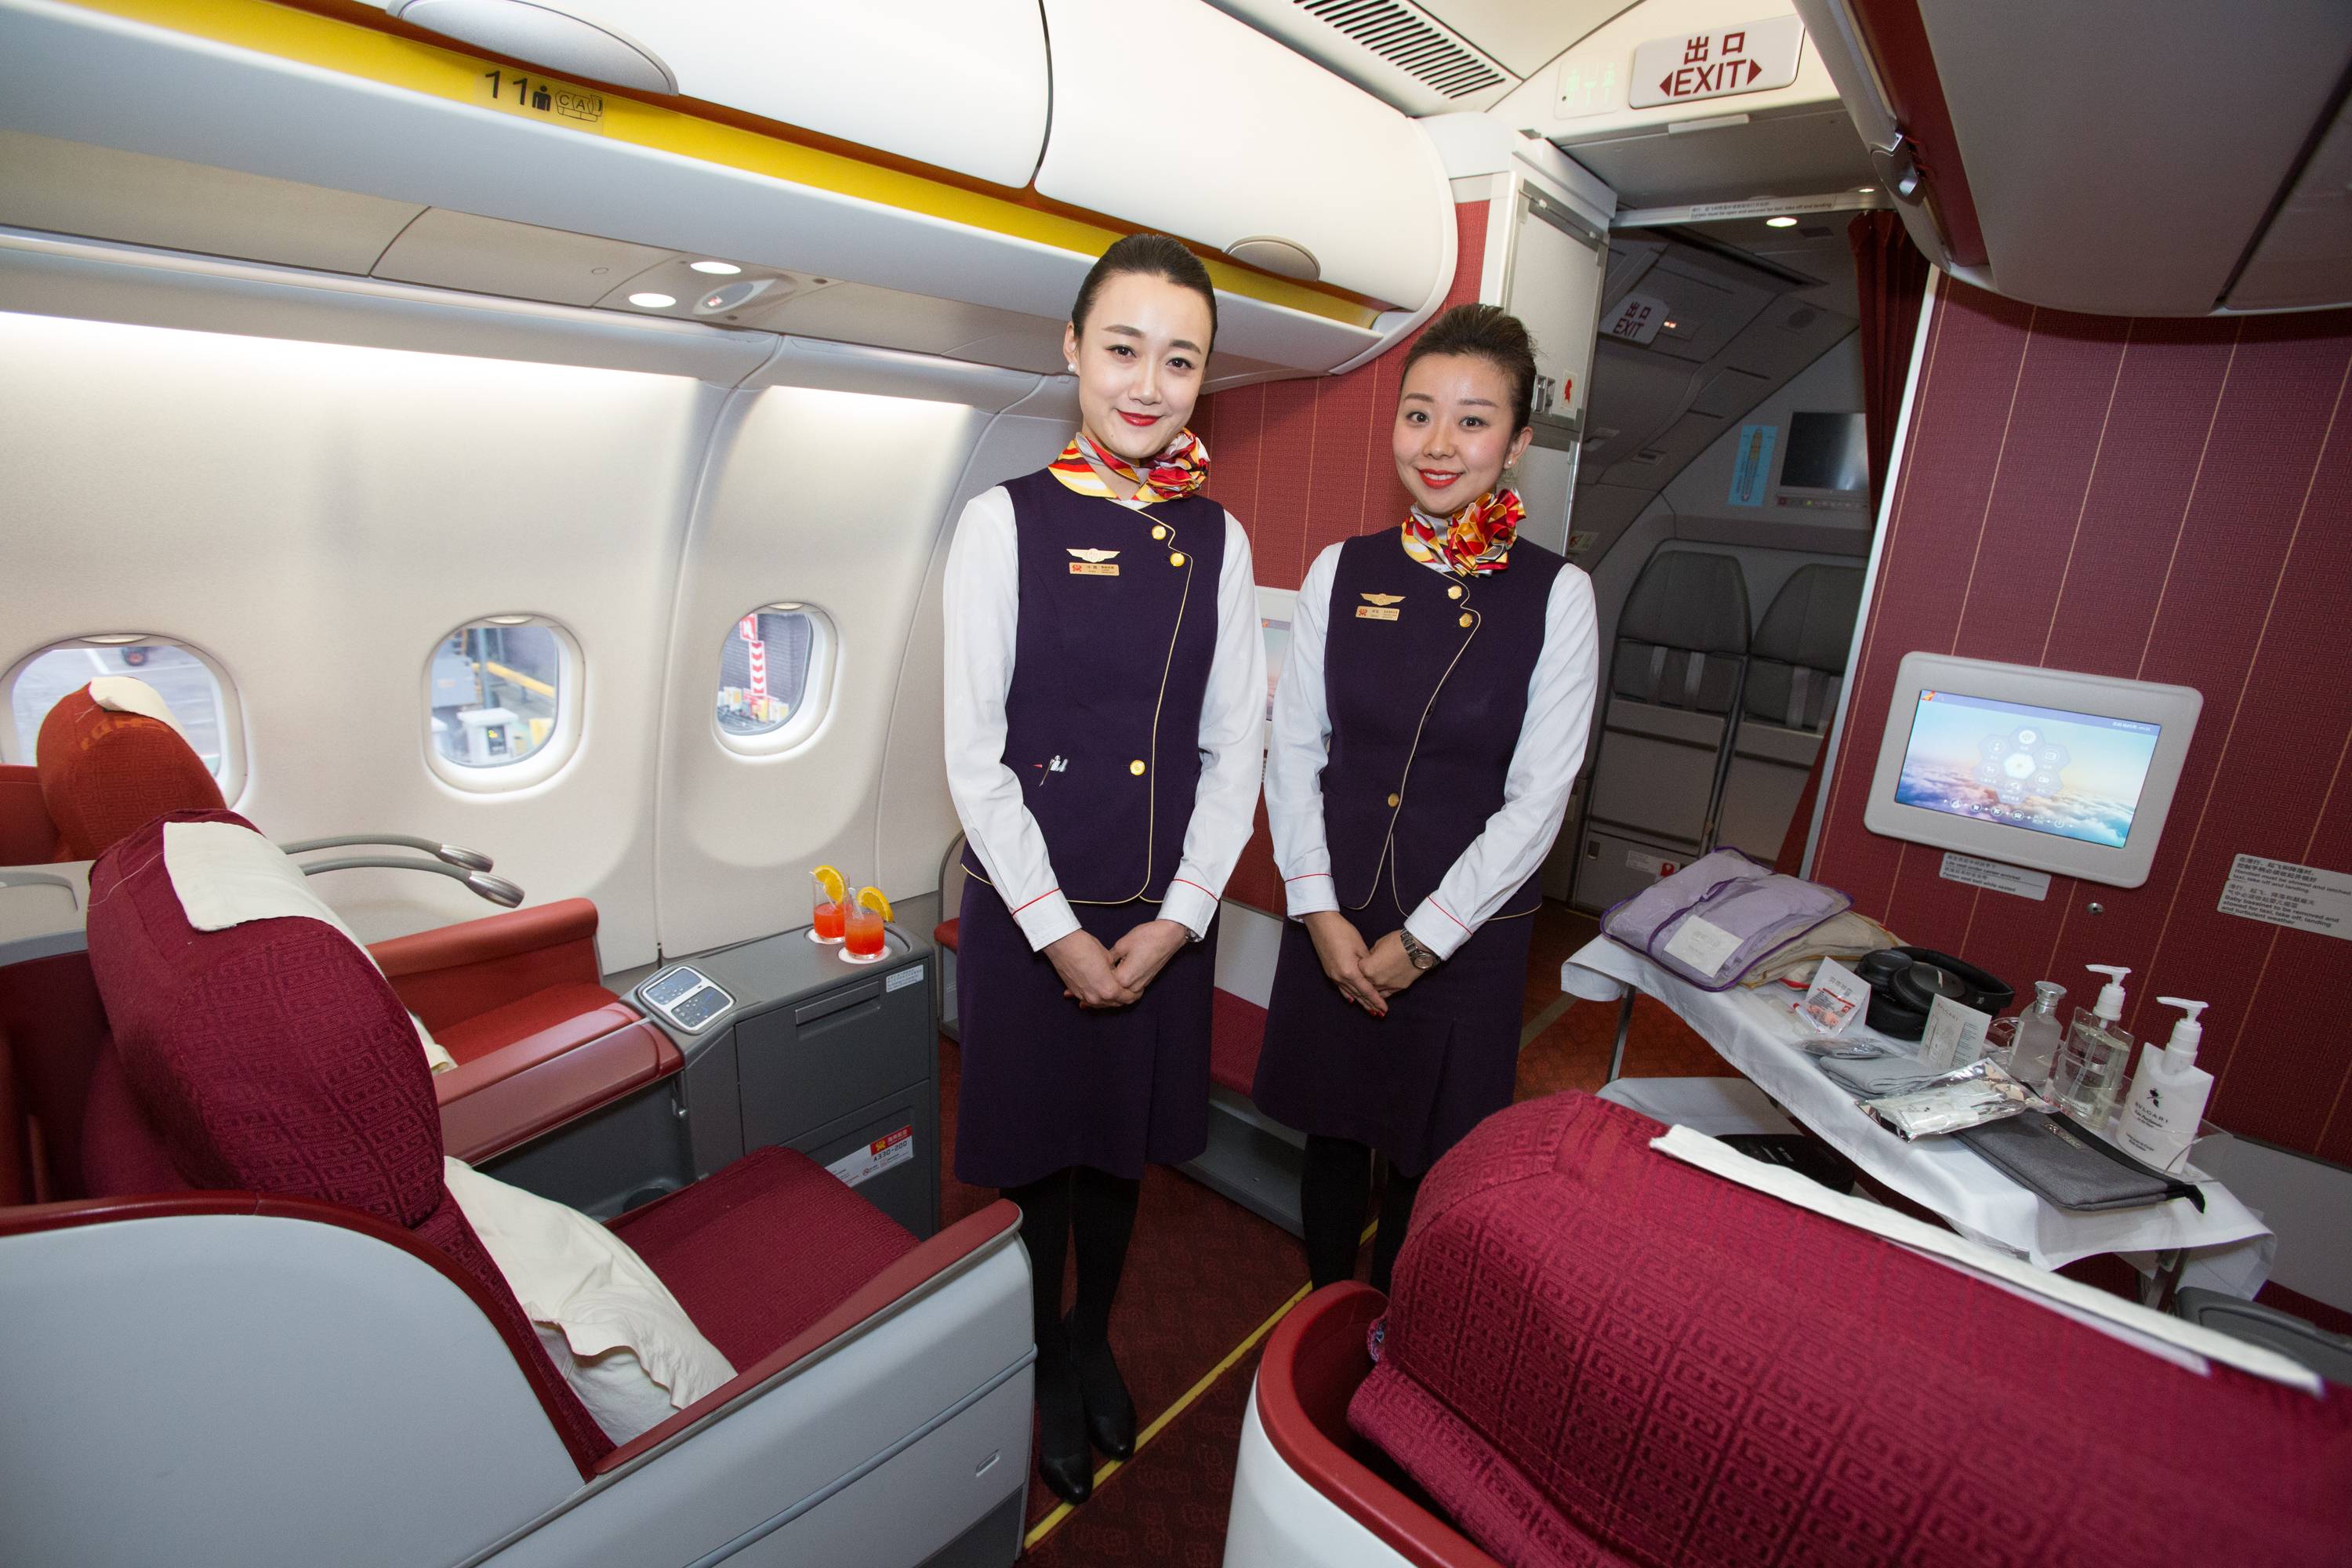 Шанхайские авиалинии - shanghai airlines - abcdef.wiki